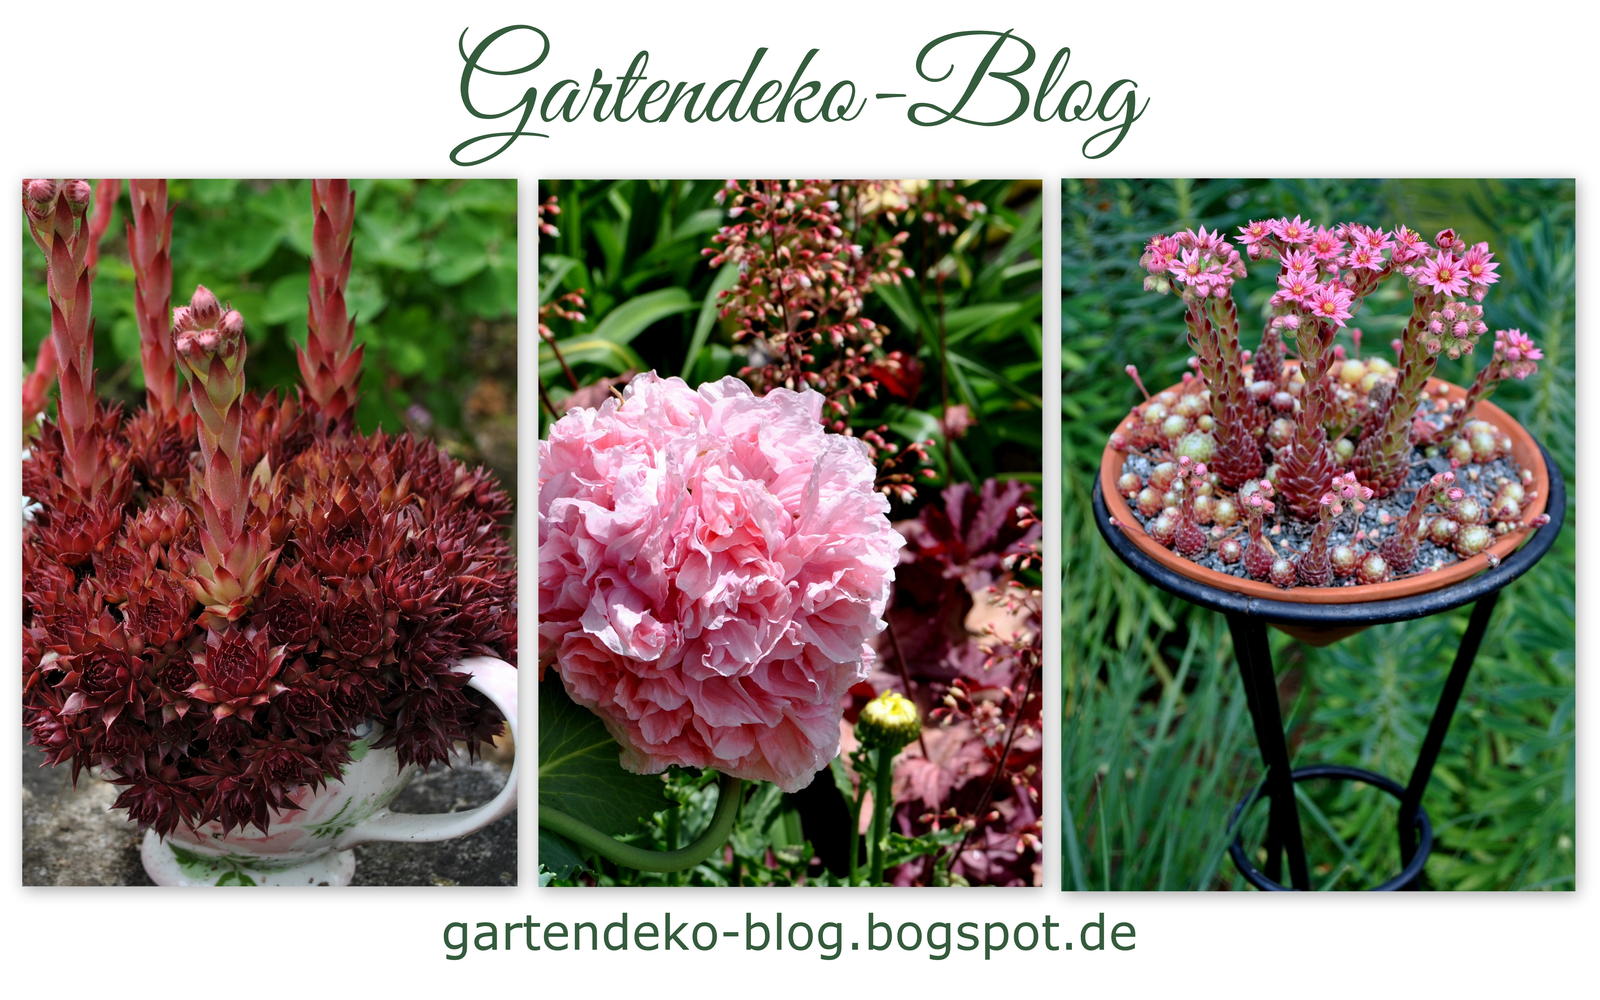 Gartendeko-Blog (1)